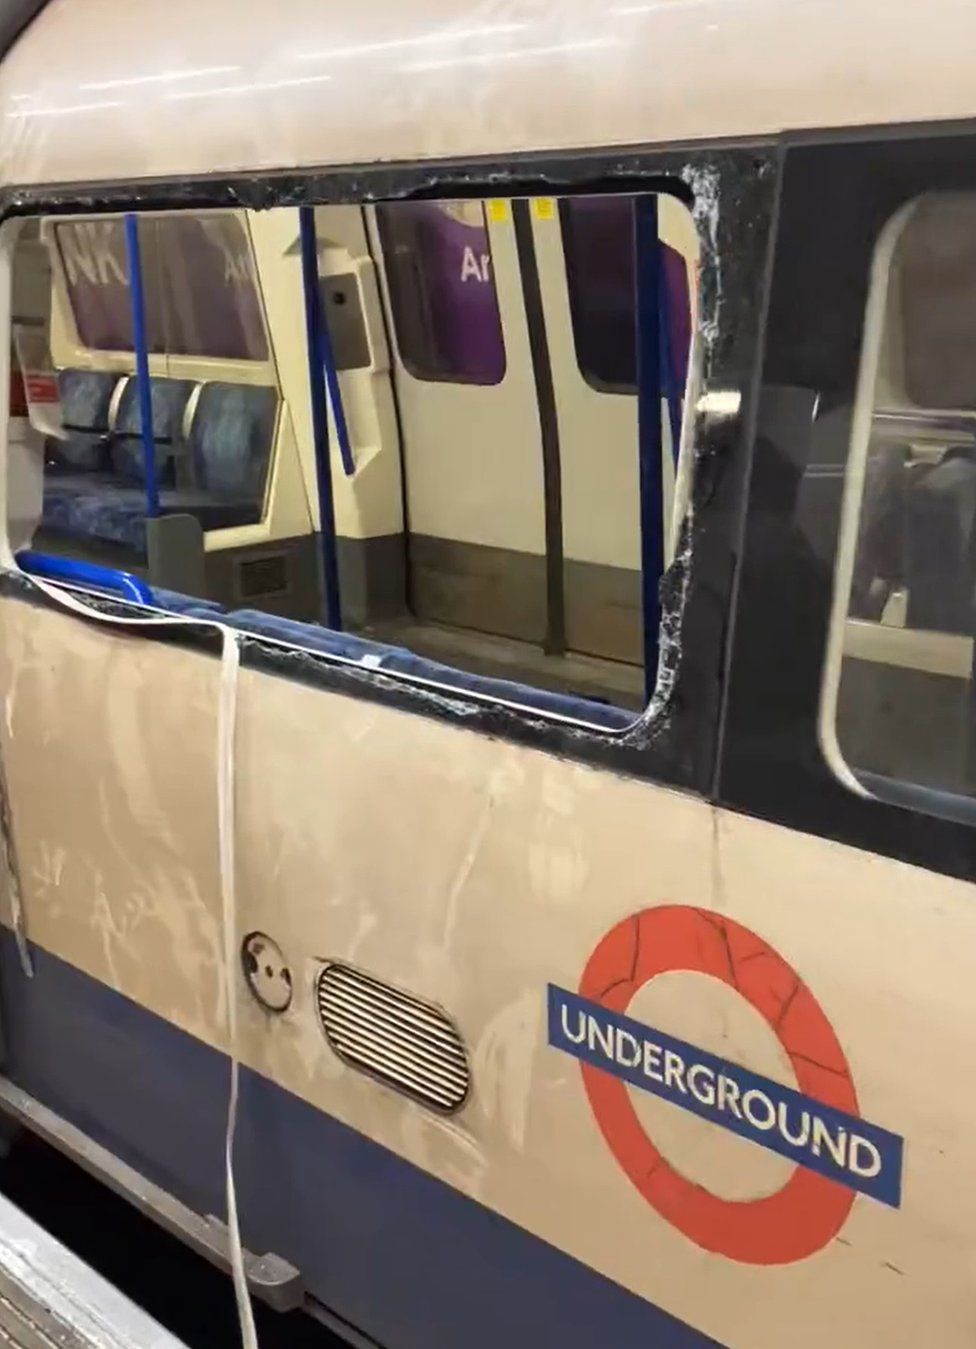 Smashed Tube train window